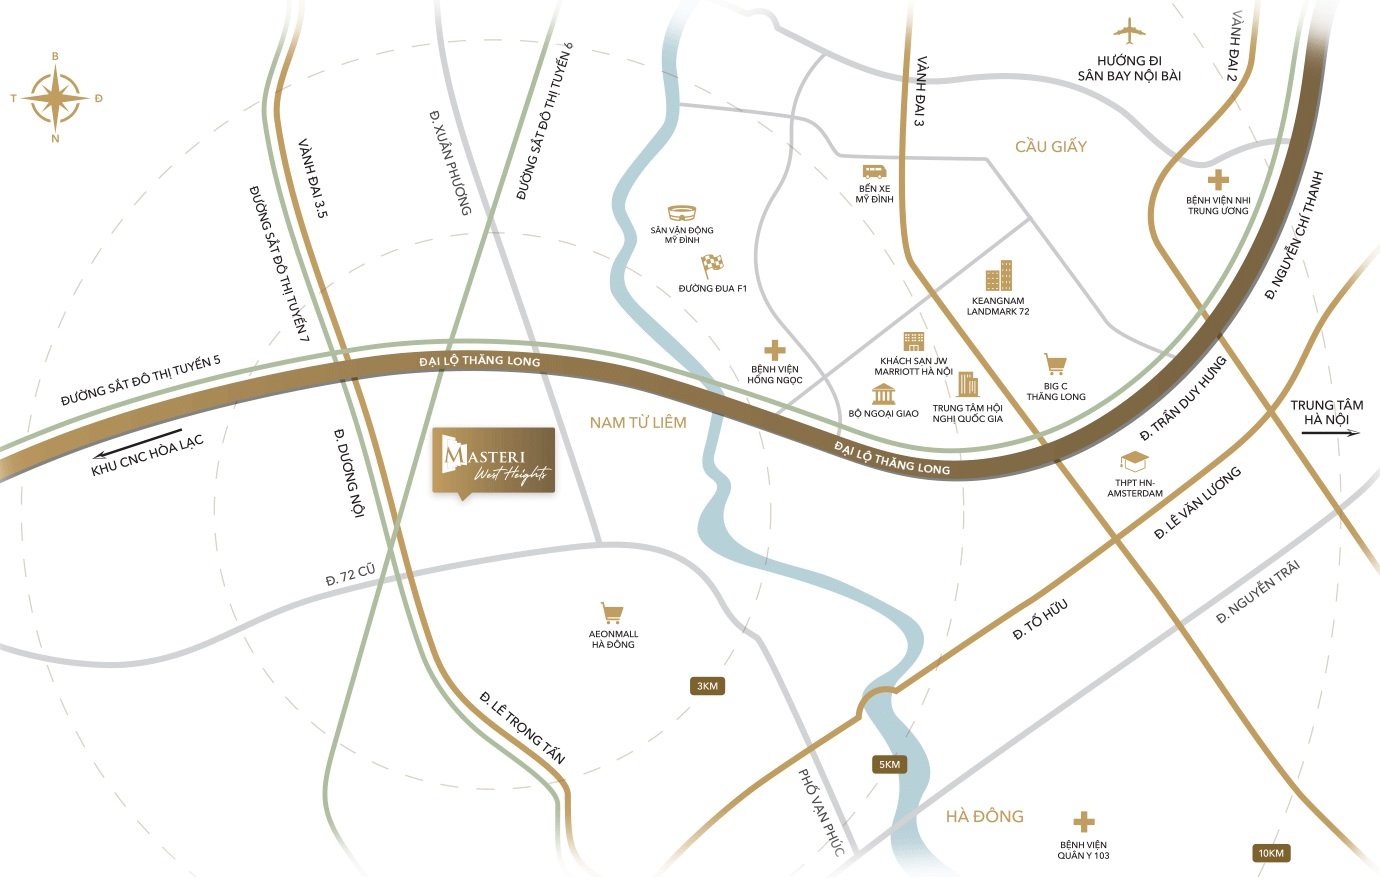 Tọa độ "vàng" của Masteri West Heights trong lòng khu đô thị Smart City